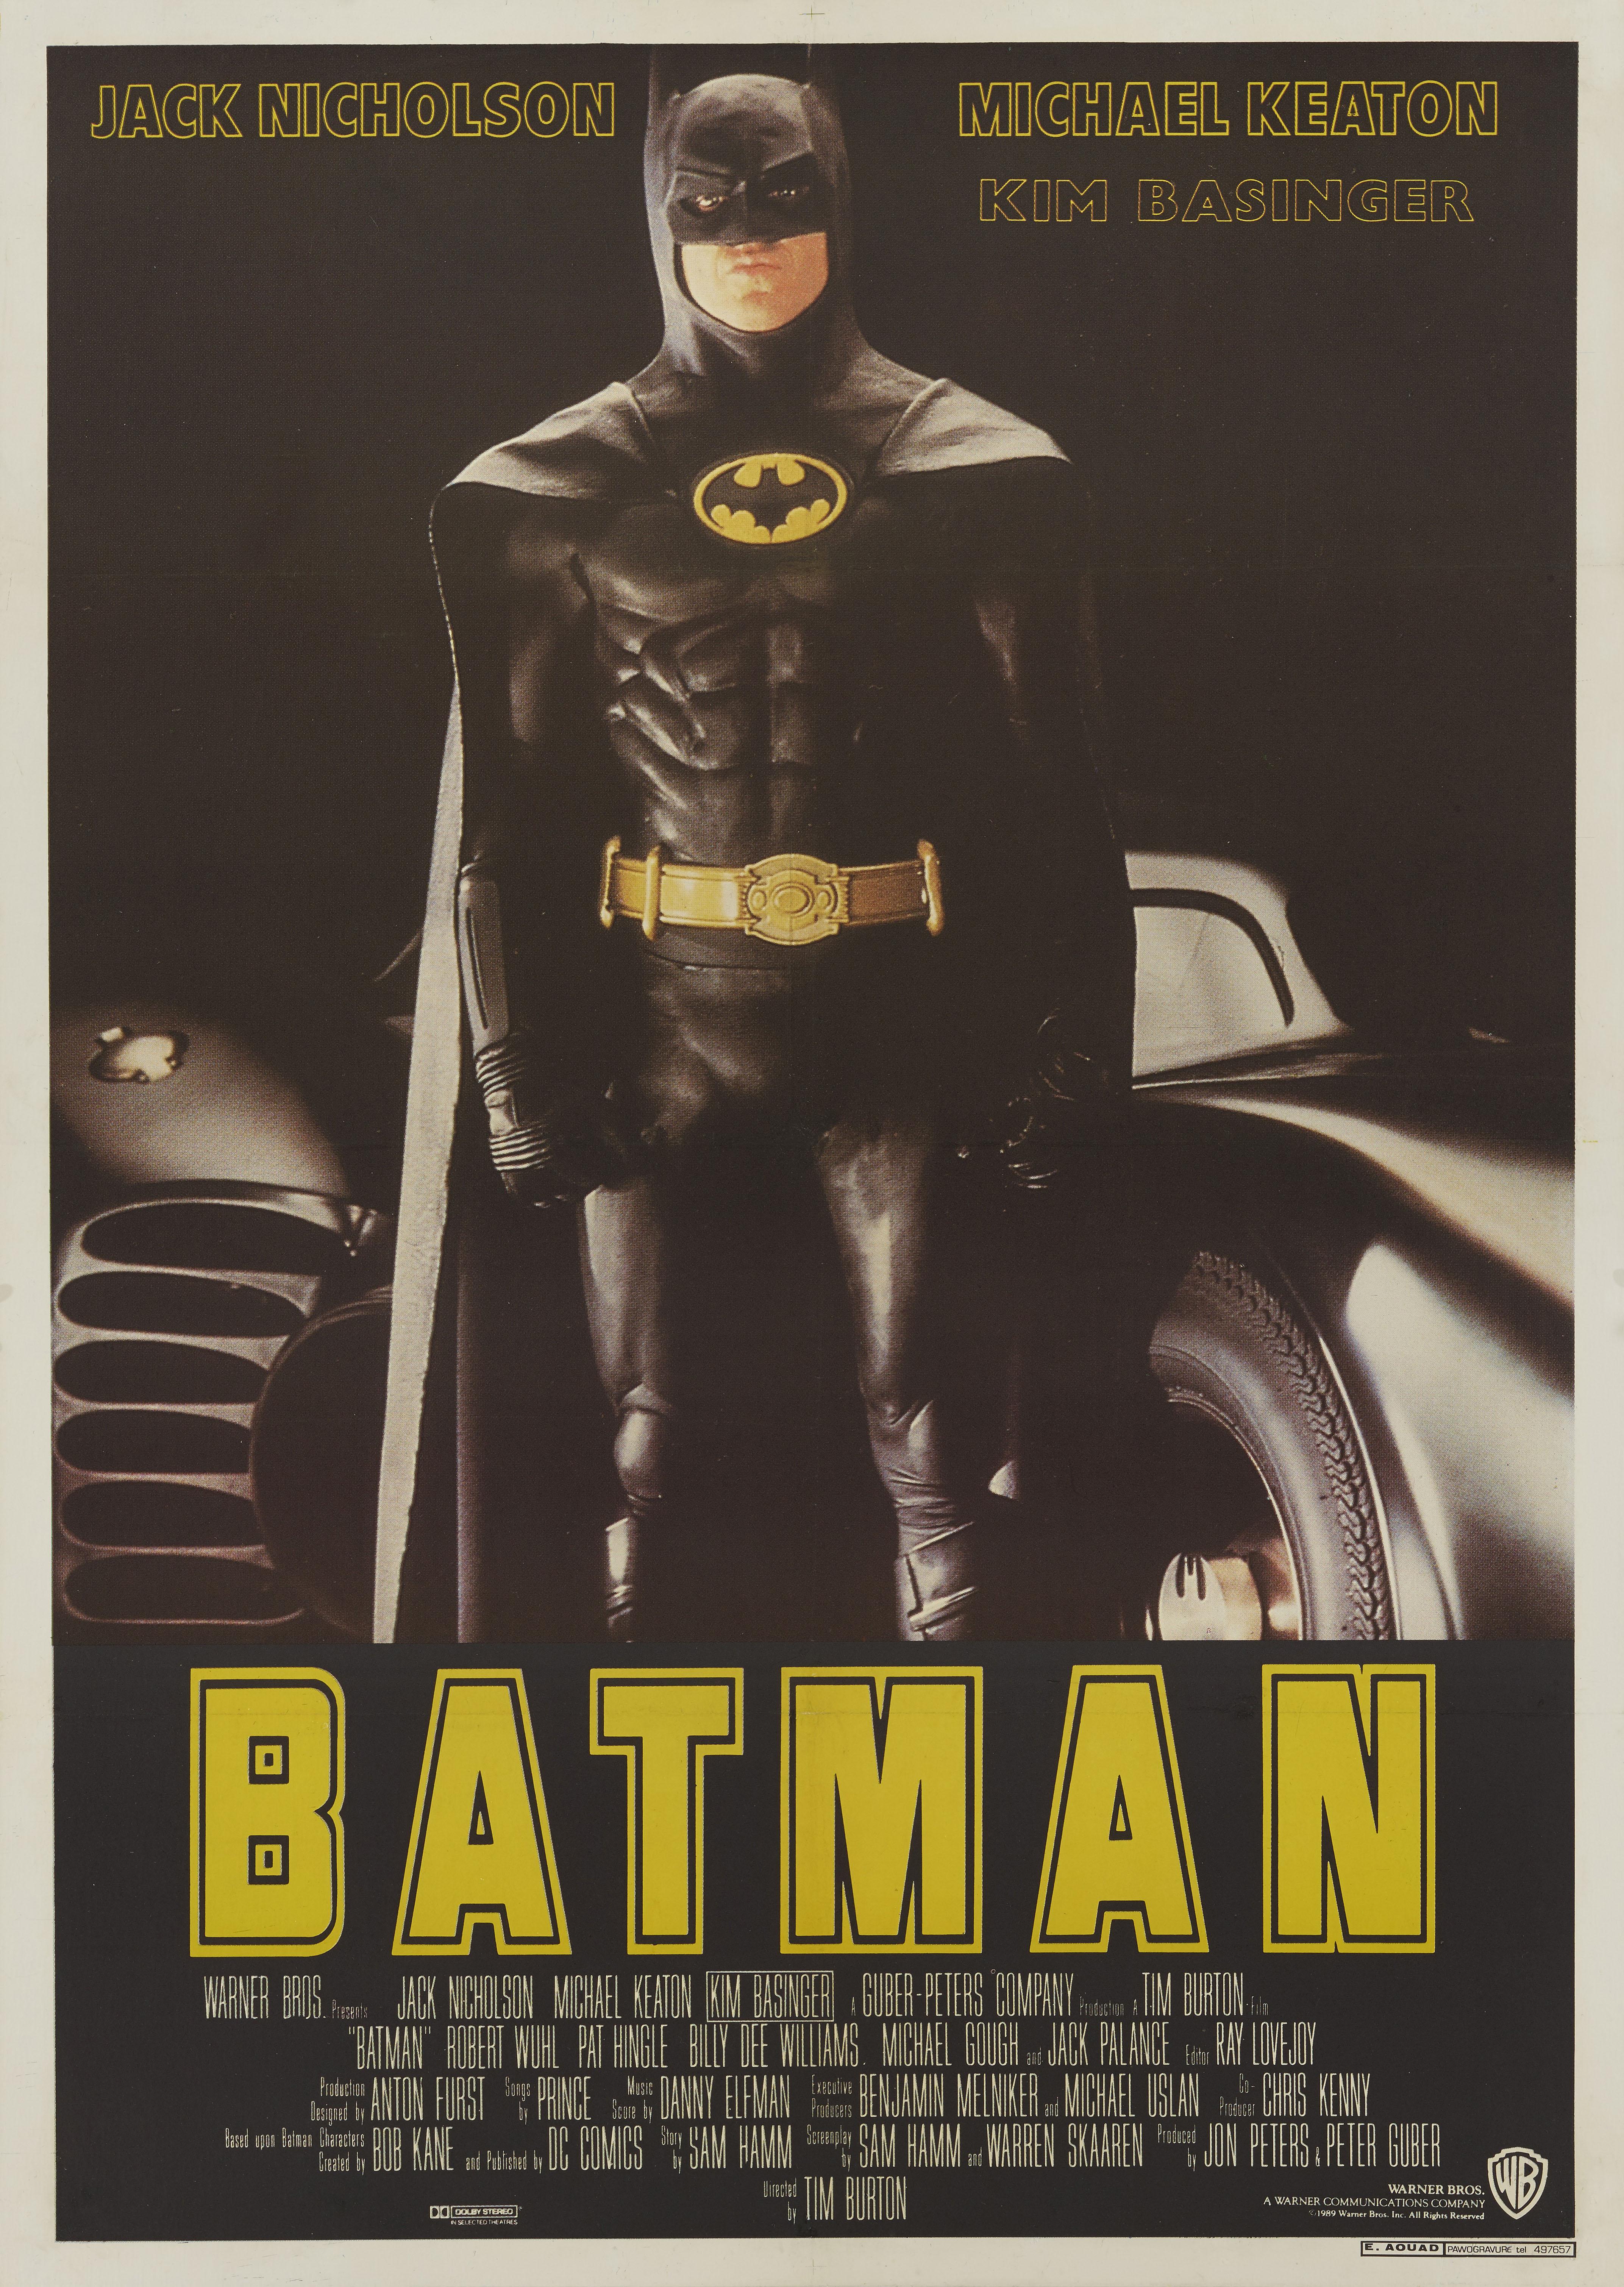 Original libanesisches Filmplakat für Tim Burtons Batman von 1989 mit Jack Nicholson, Michael Keaton und Kim Basinger in den Hauptrollen. Das Artwork dieses Posters unterscheidet sich stark von dem des US-Posters, das nur das Bat-Logo zeigt.
Dieses